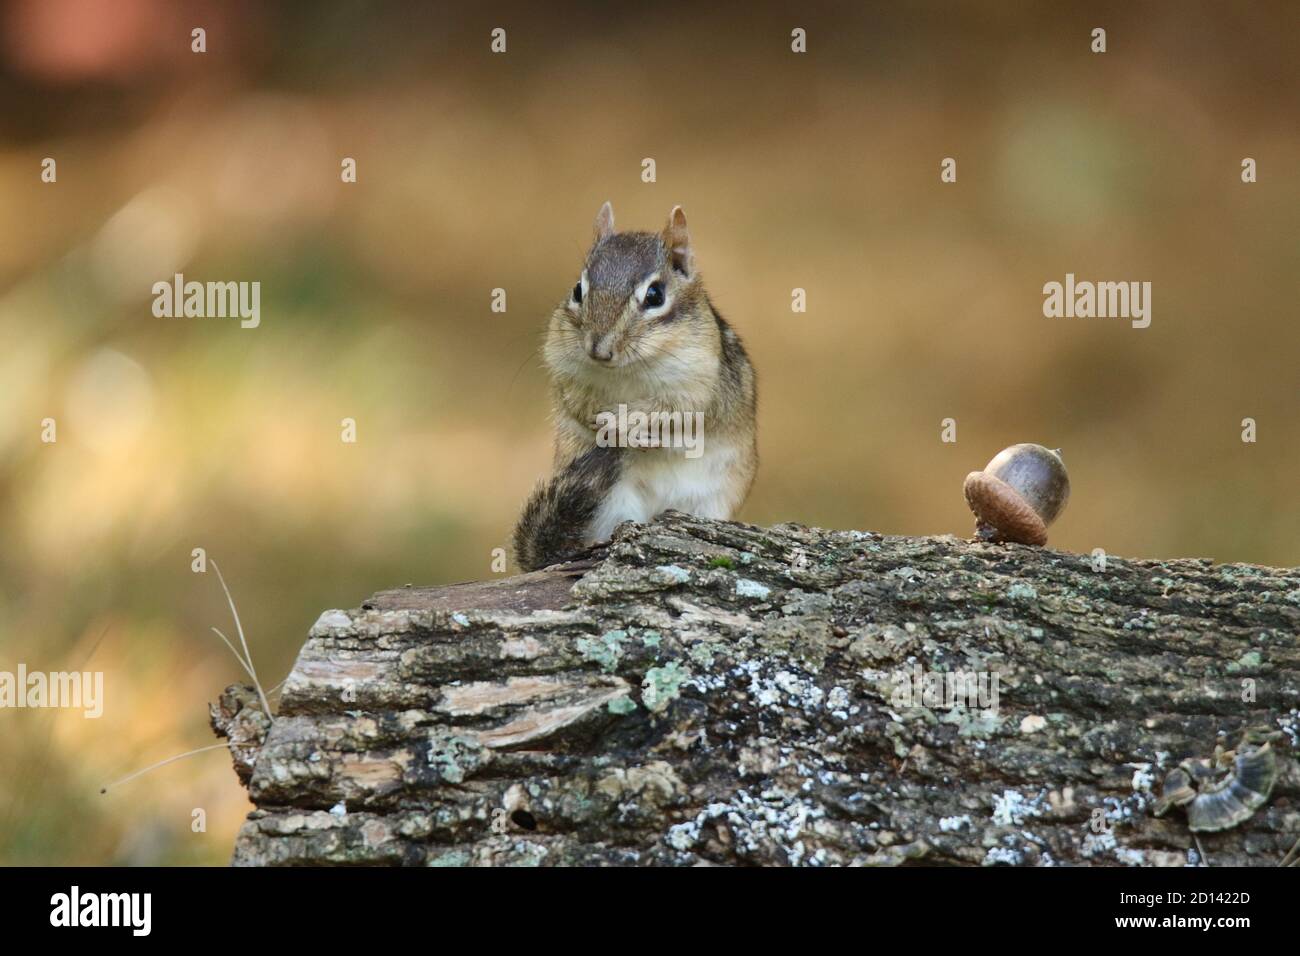 Carino piccolo chipmunk seduta su un log in autunnale grooming la coda Foto Stock